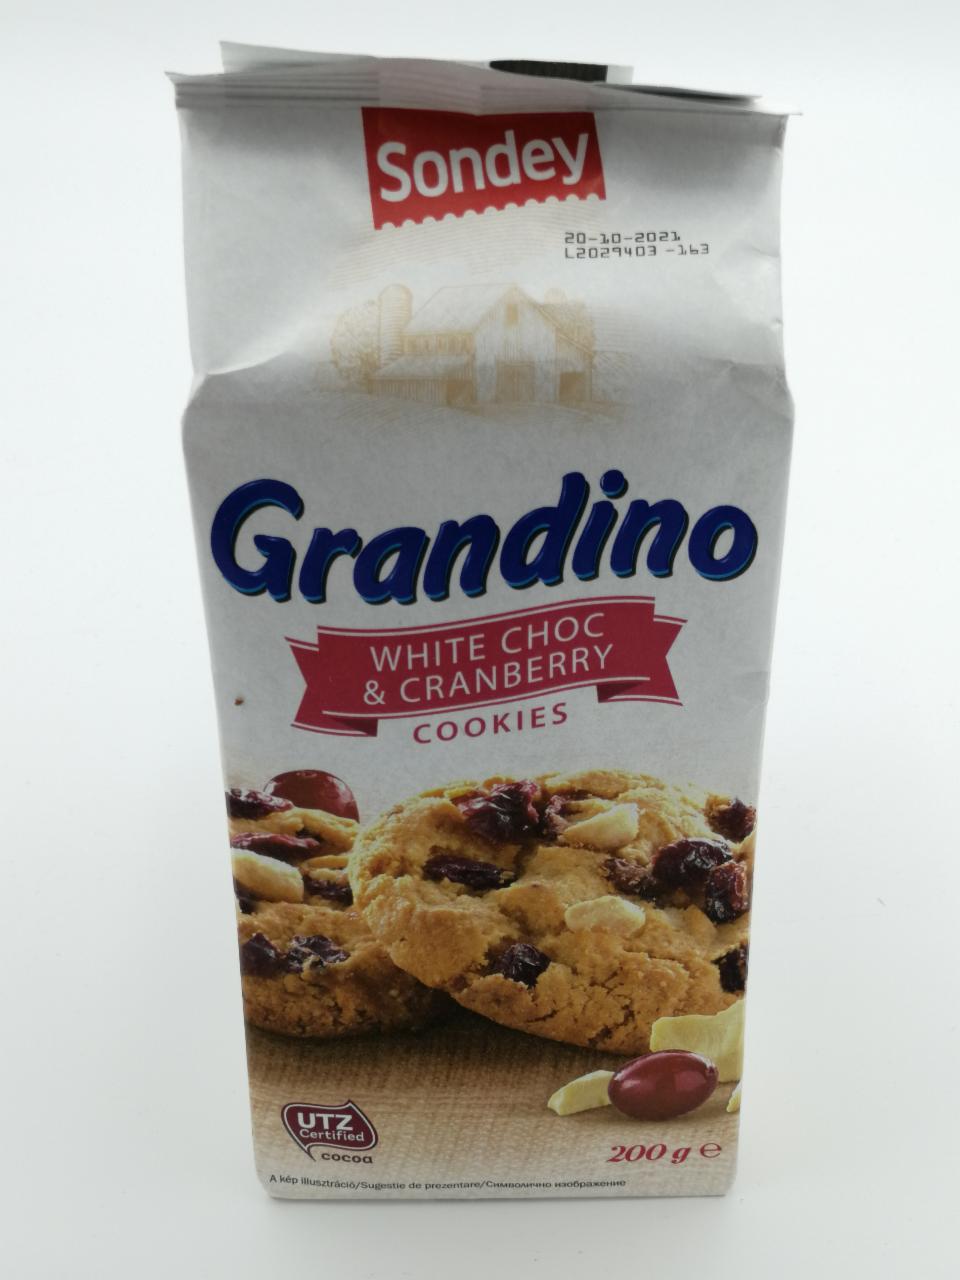 Фото - Печенье с белым шоколадом и клюквой White Choc & Cranberry Grandino Sodney